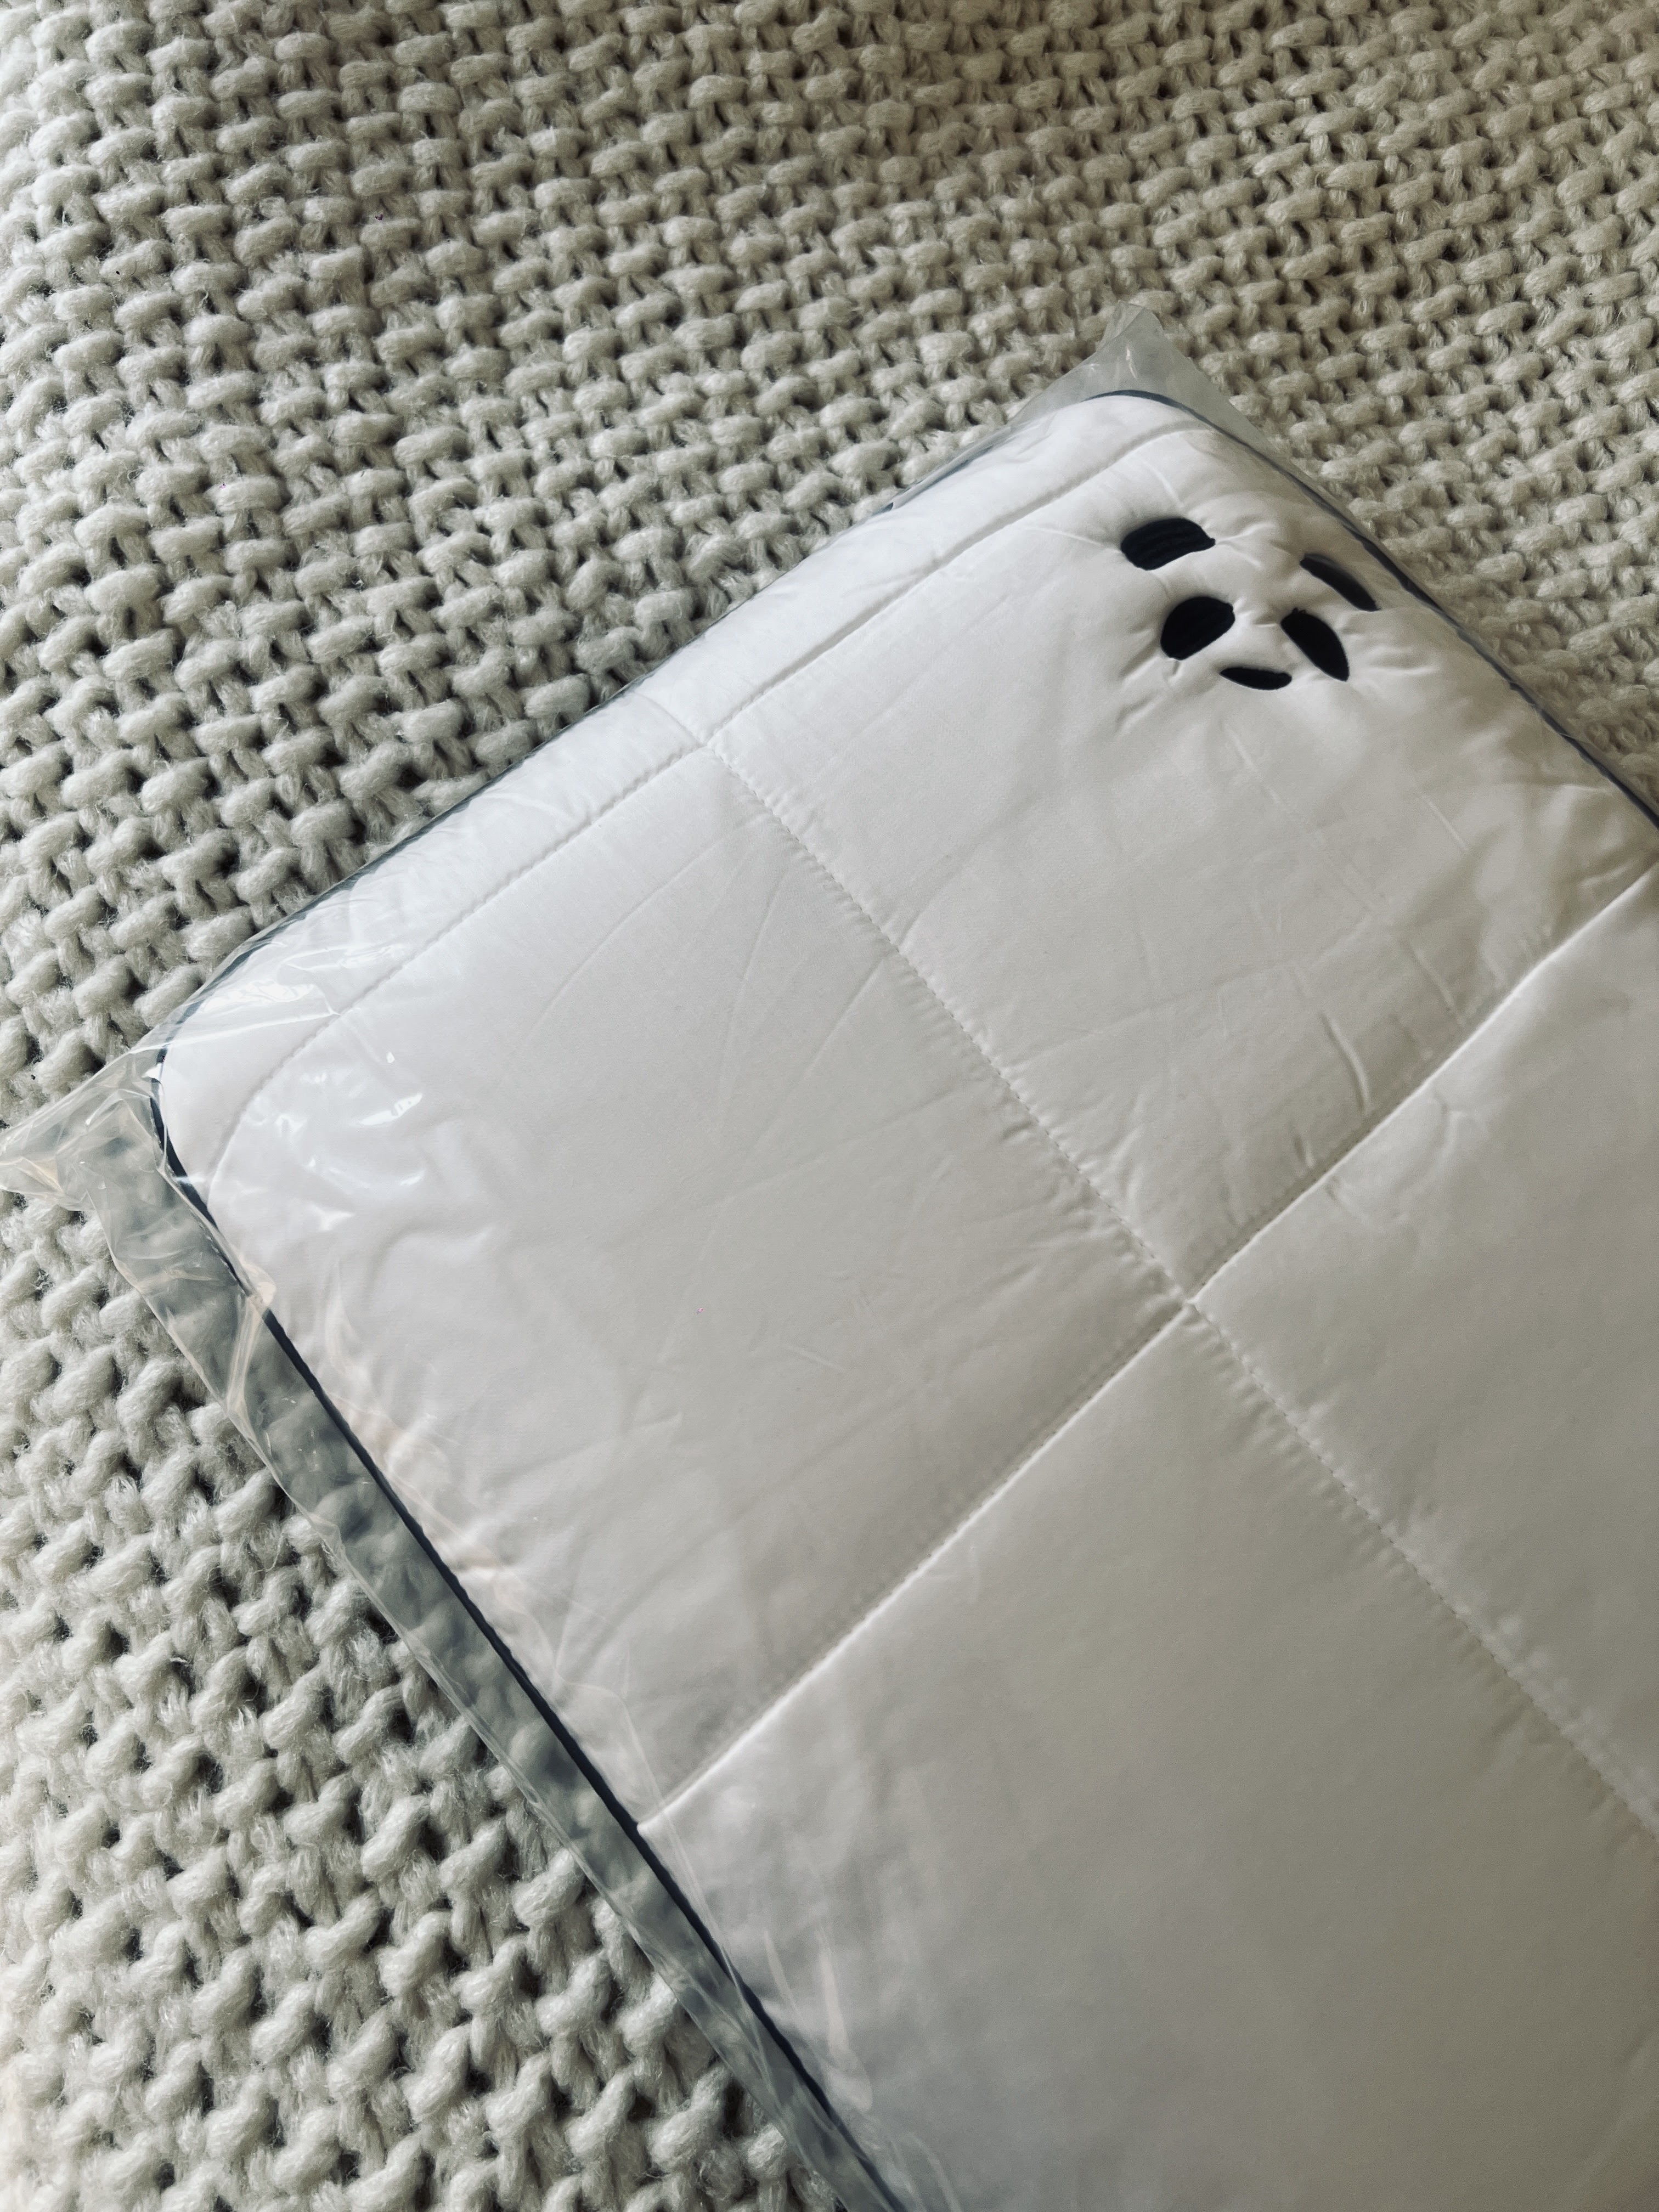 Panda Bamboo Pillow